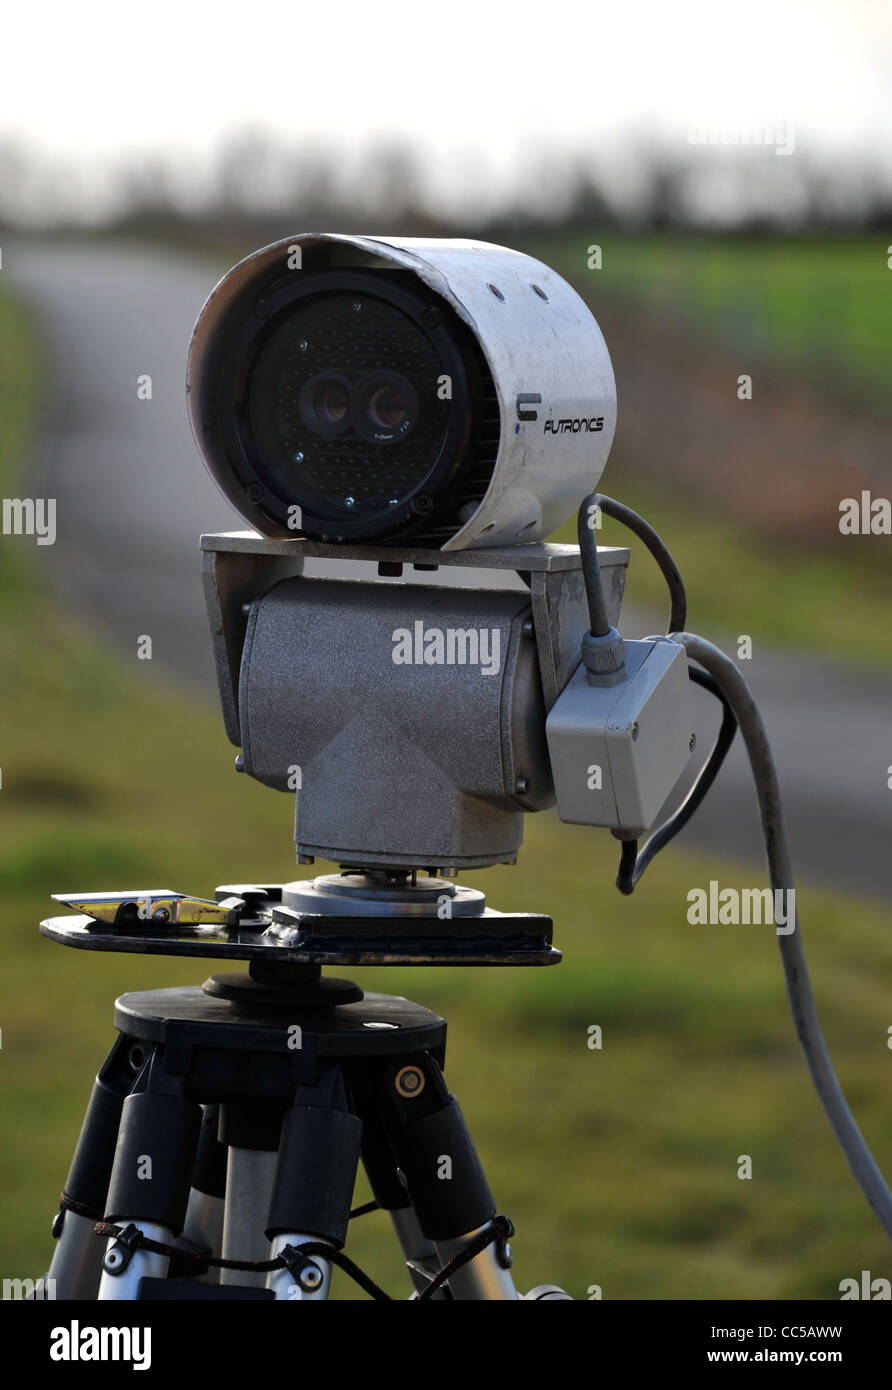 Fonds routier DVLA, disque, licence d'impôt détecteur caméra dans l'utilisation, UK Banque D'Images